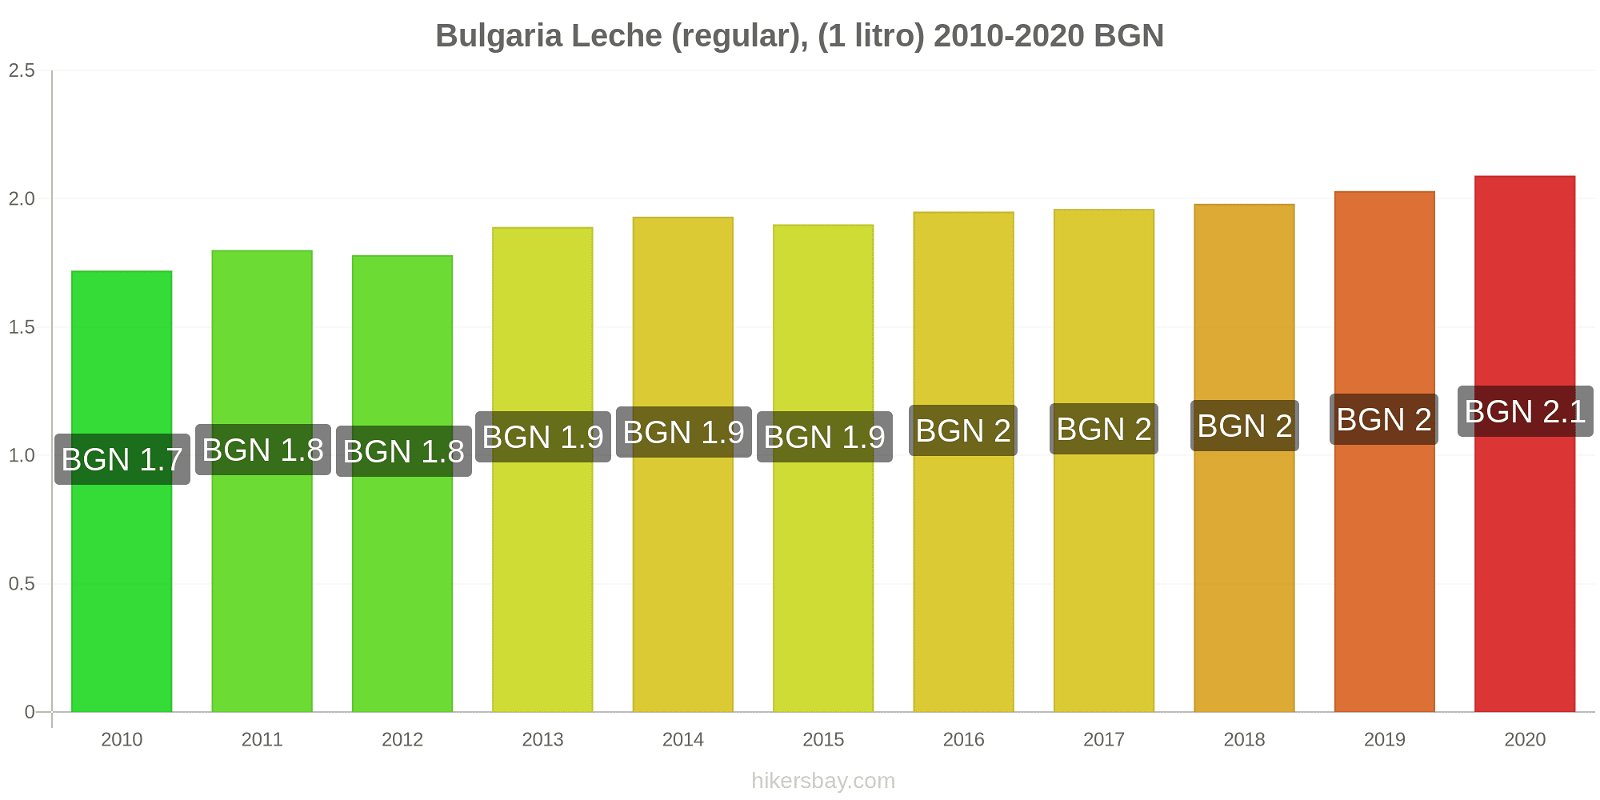 Bulgaria cambios de precios Leche (Regular), (1 litro) hikersbay.com